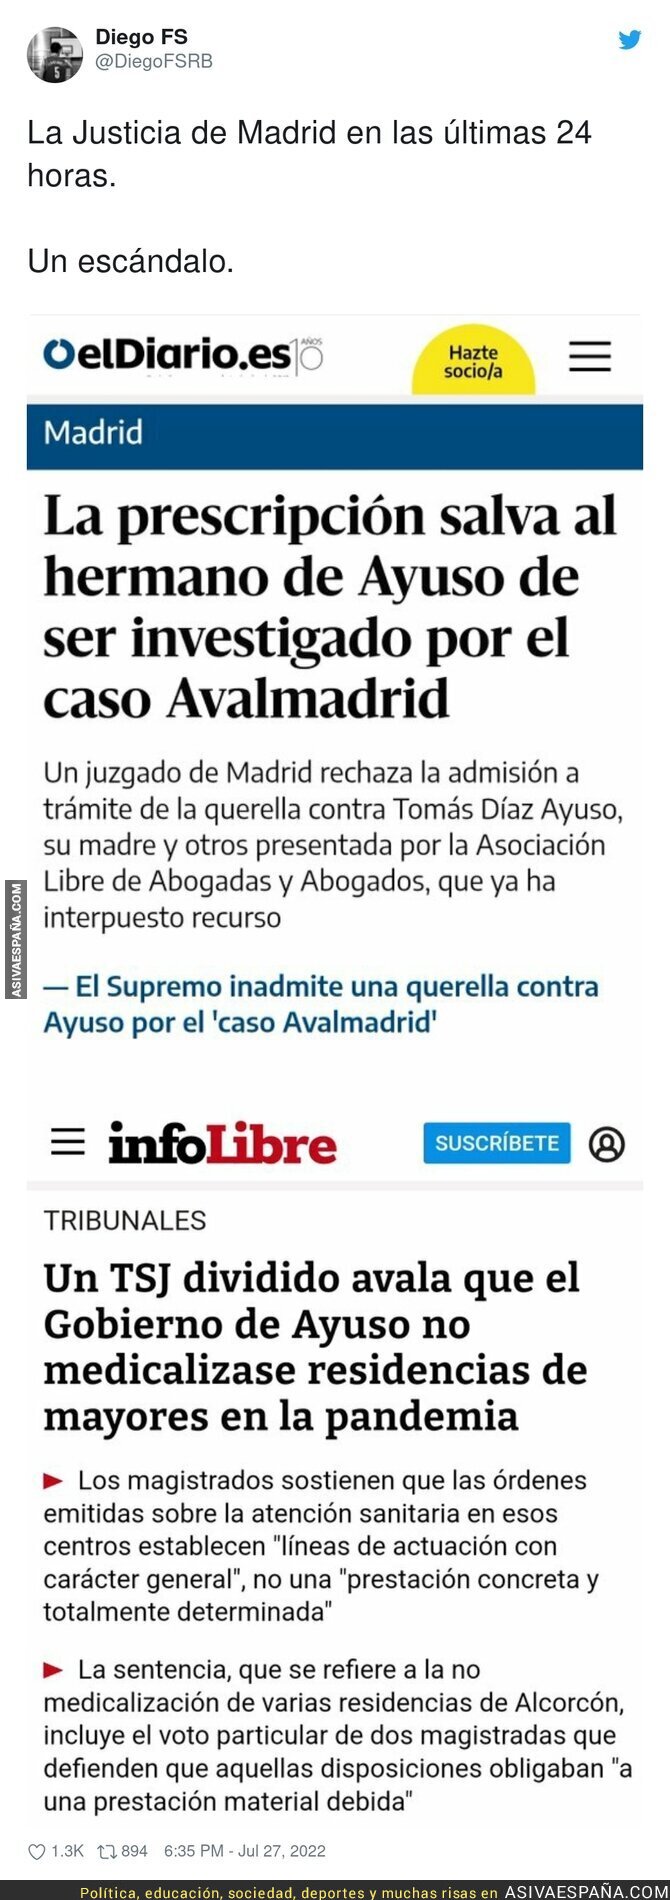 Dos noticias juntas te explican como funciona la justicia en España